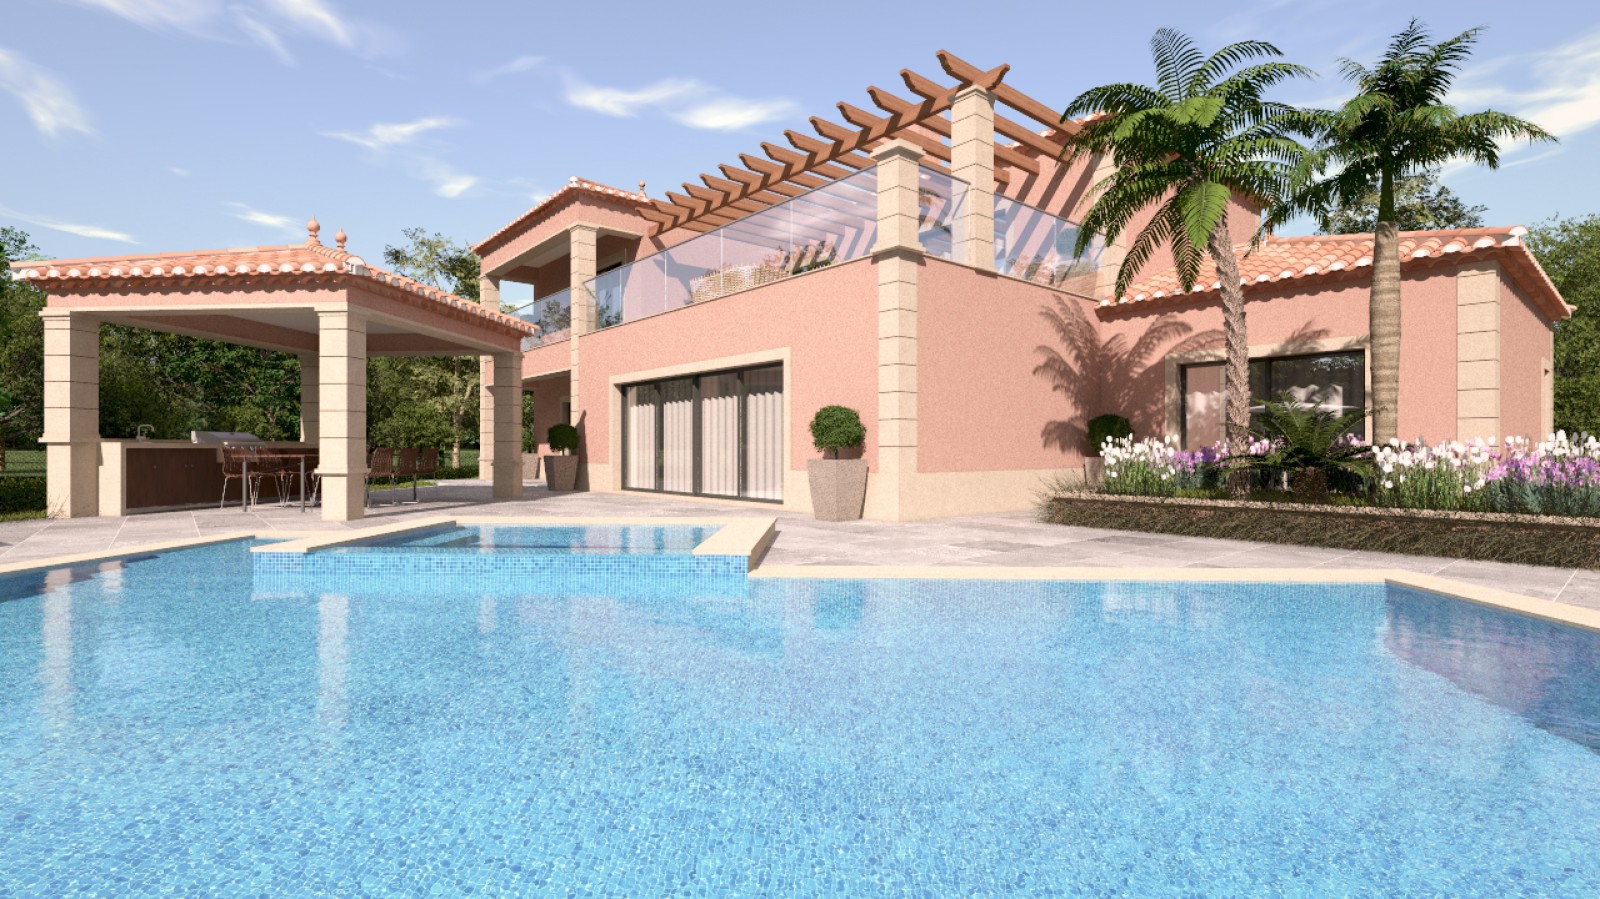 Moradia V4 com piscina, para venda em Portimão, Algarve_231714